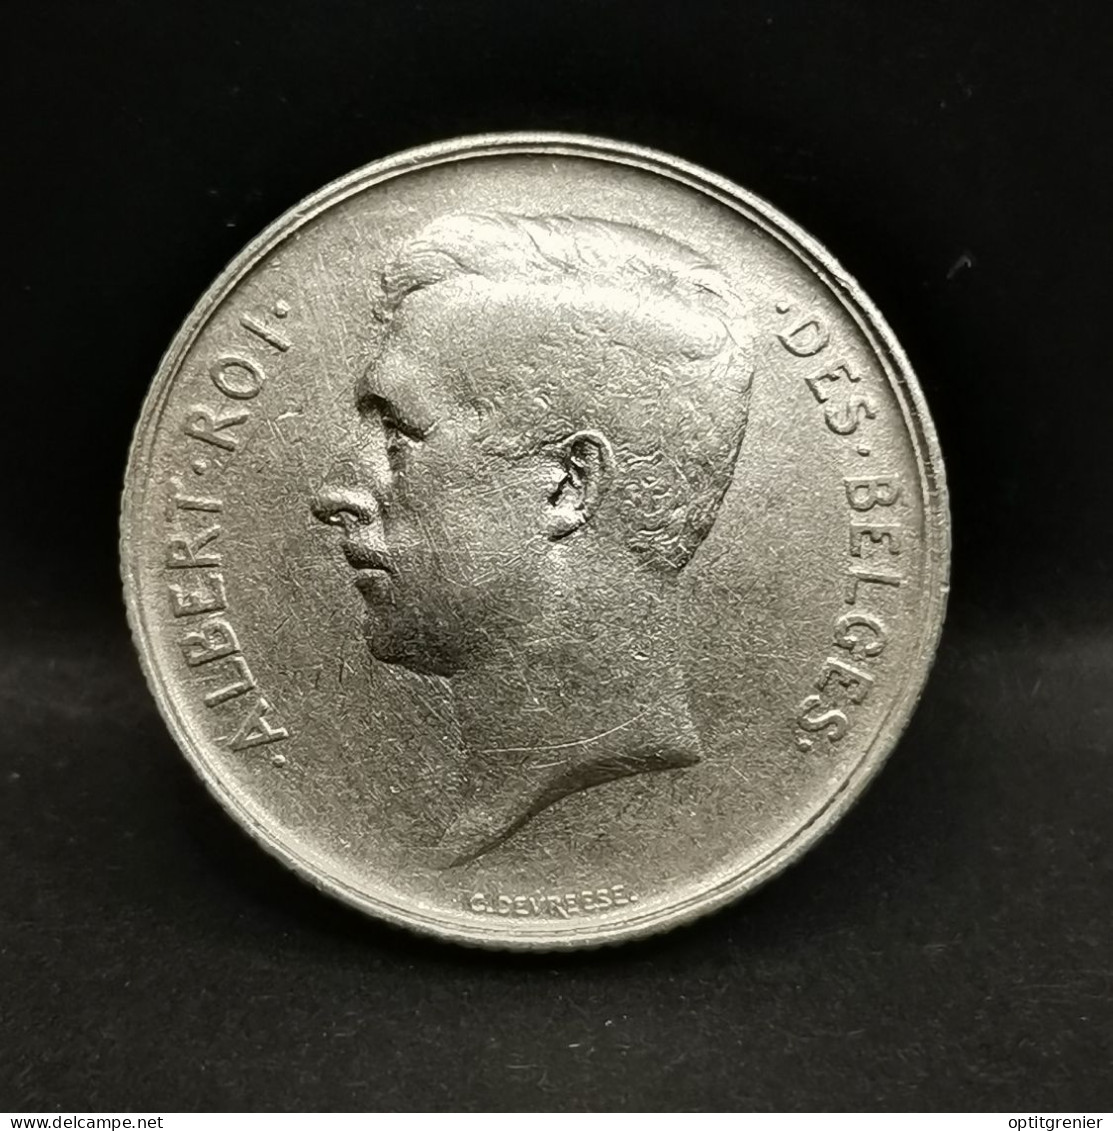 1 FRANC ARGENT 1910 ALBERT 1er EN FRANCAIS BELGIQUE / BELGIUM SILVER - 1 Franc